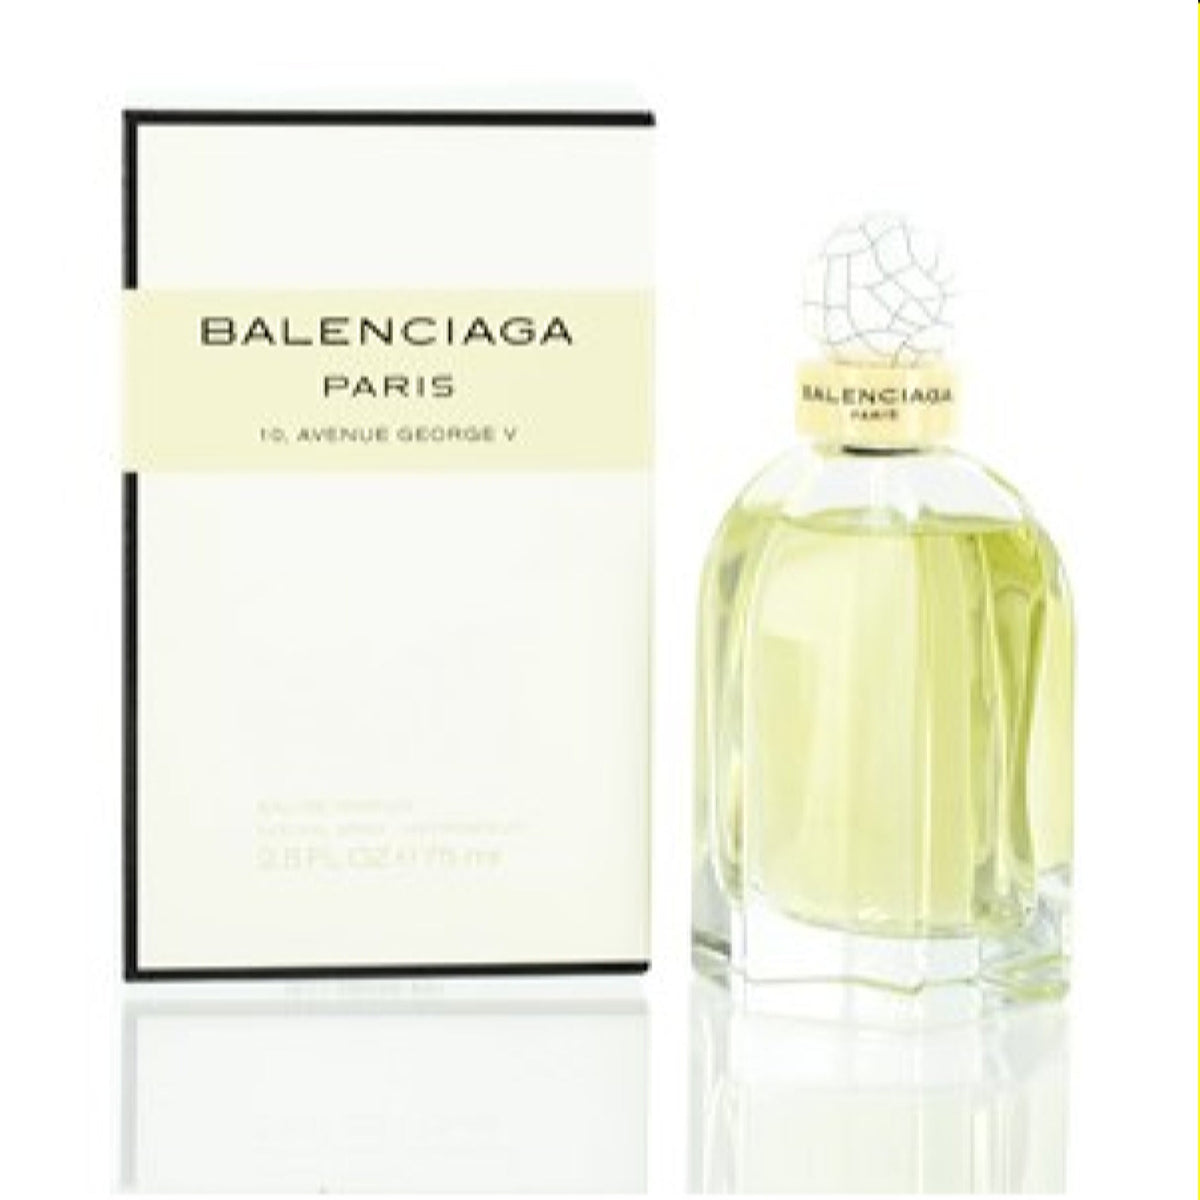 Balenciaga Paris Balenciaga Edp Spray 2.5 Oz (75 Ml) For Women  000009